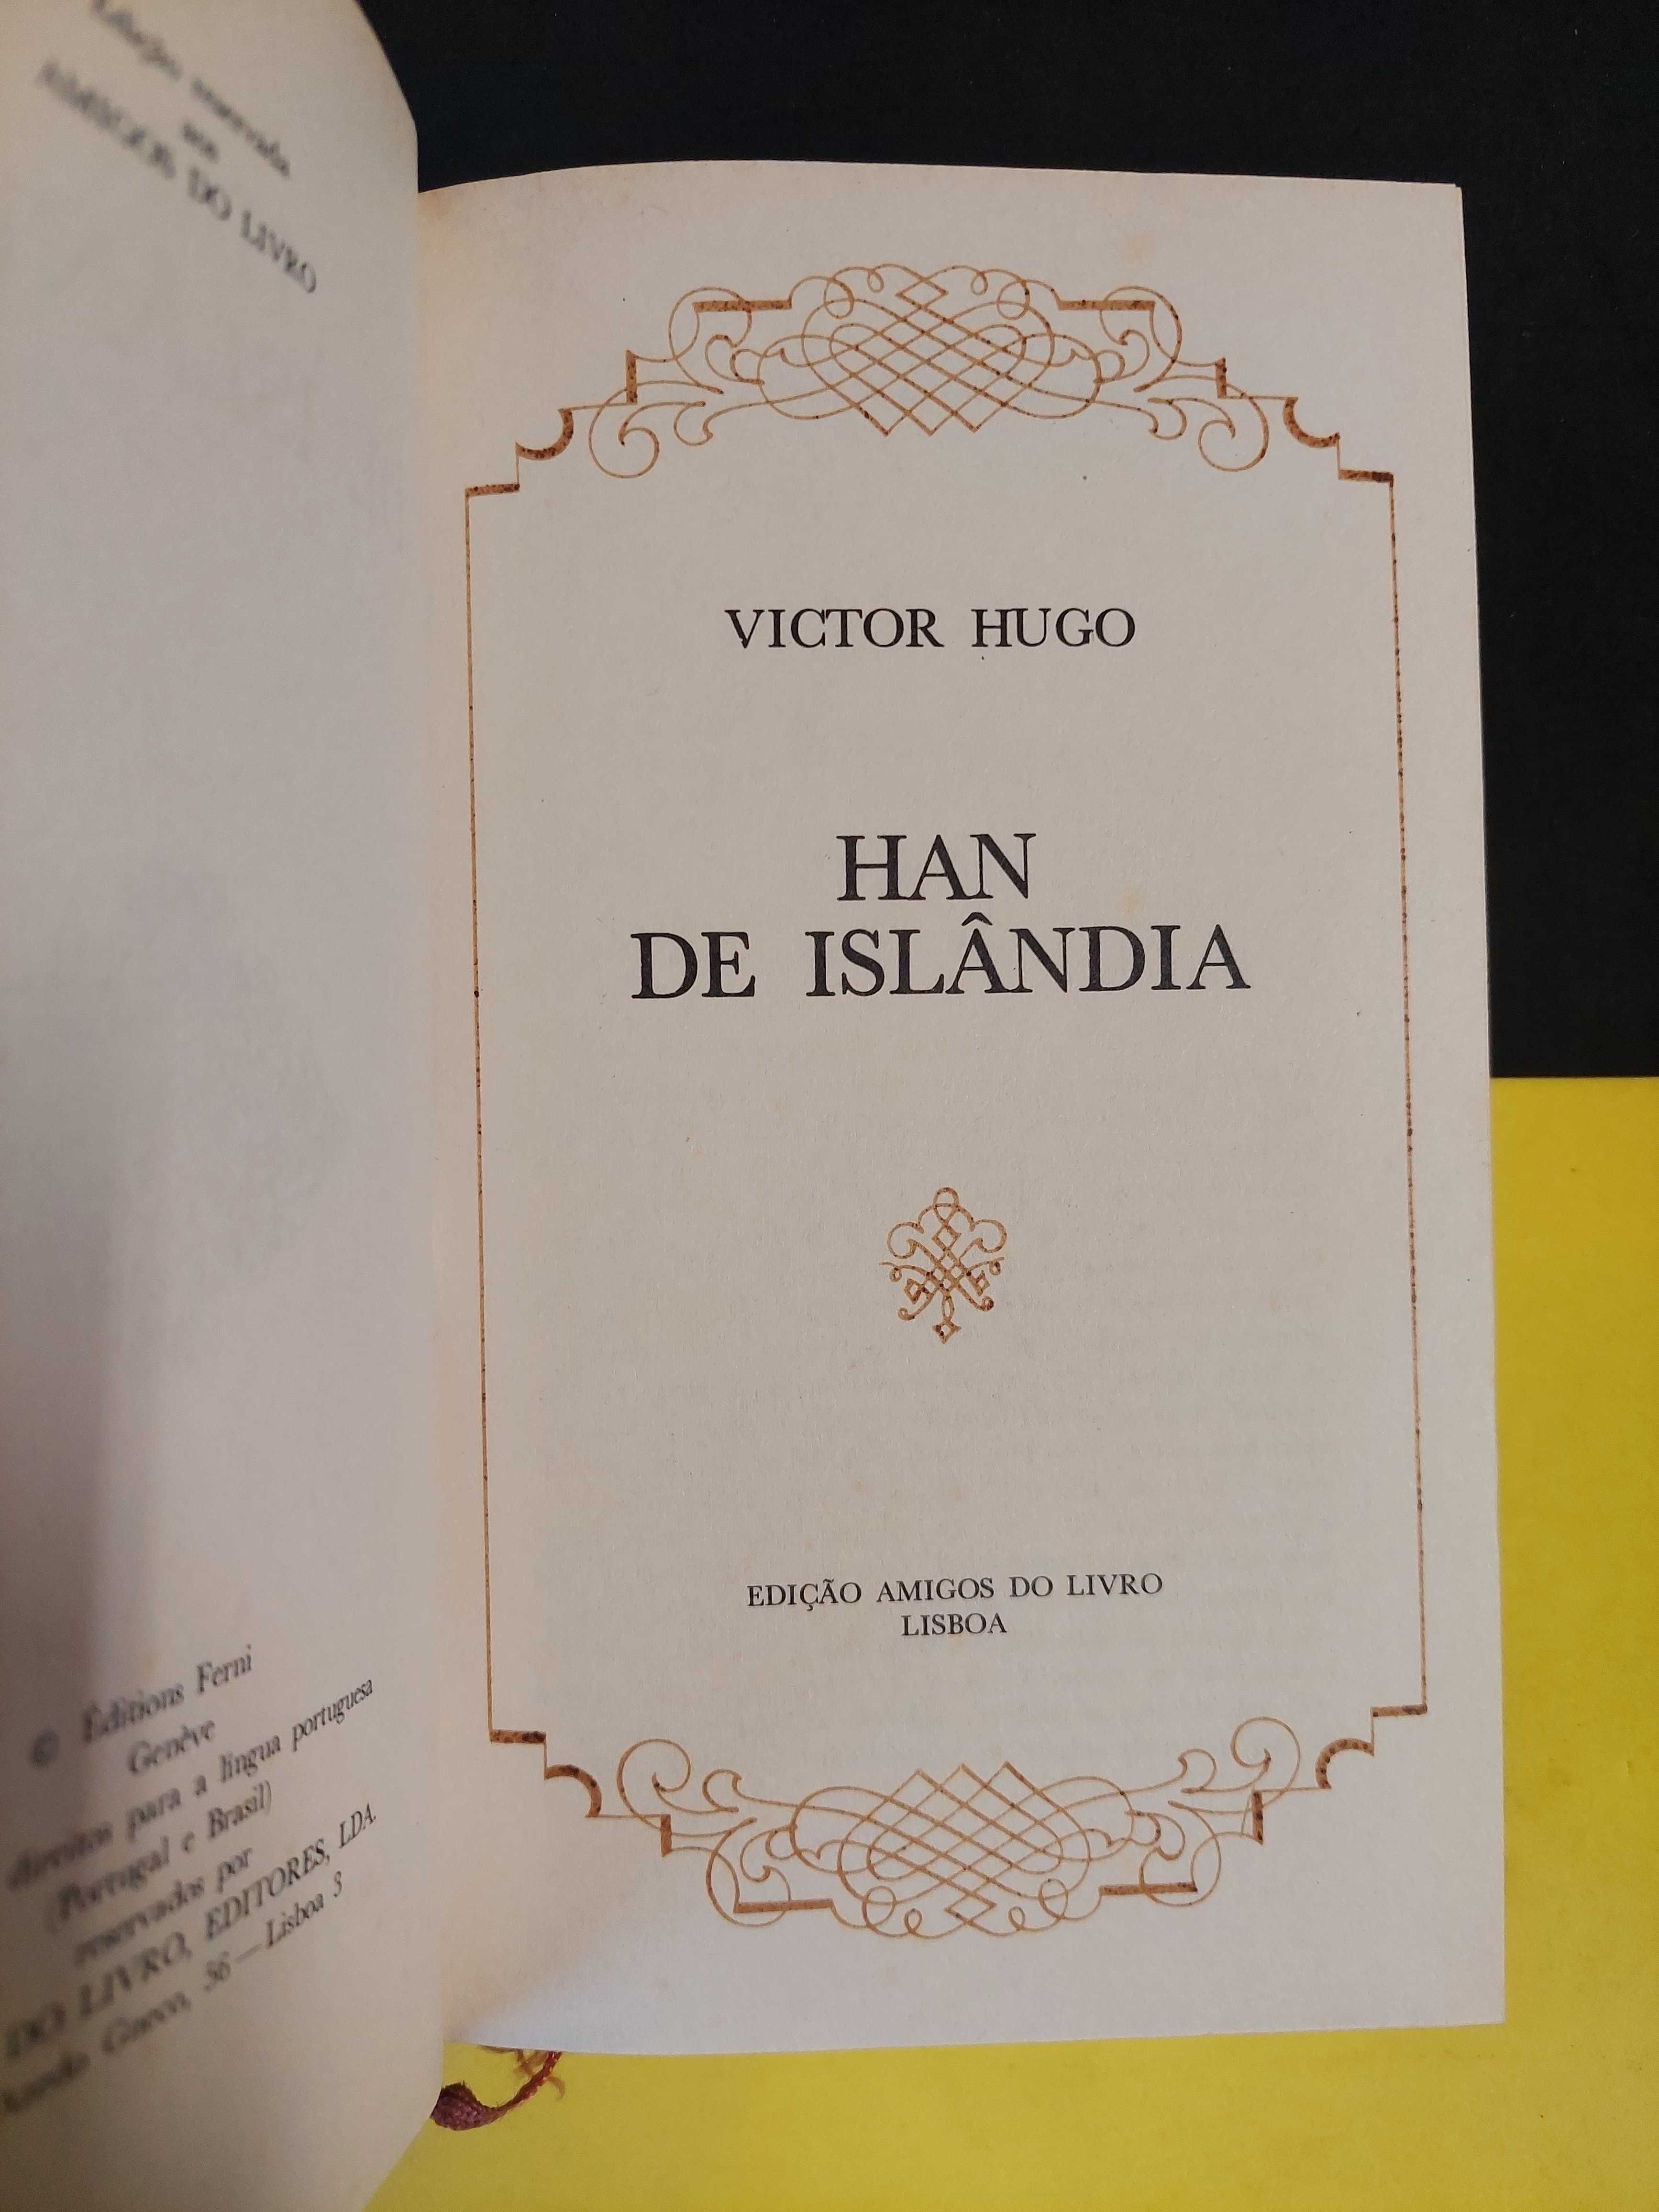 Victor Hugo - Han de Islândia